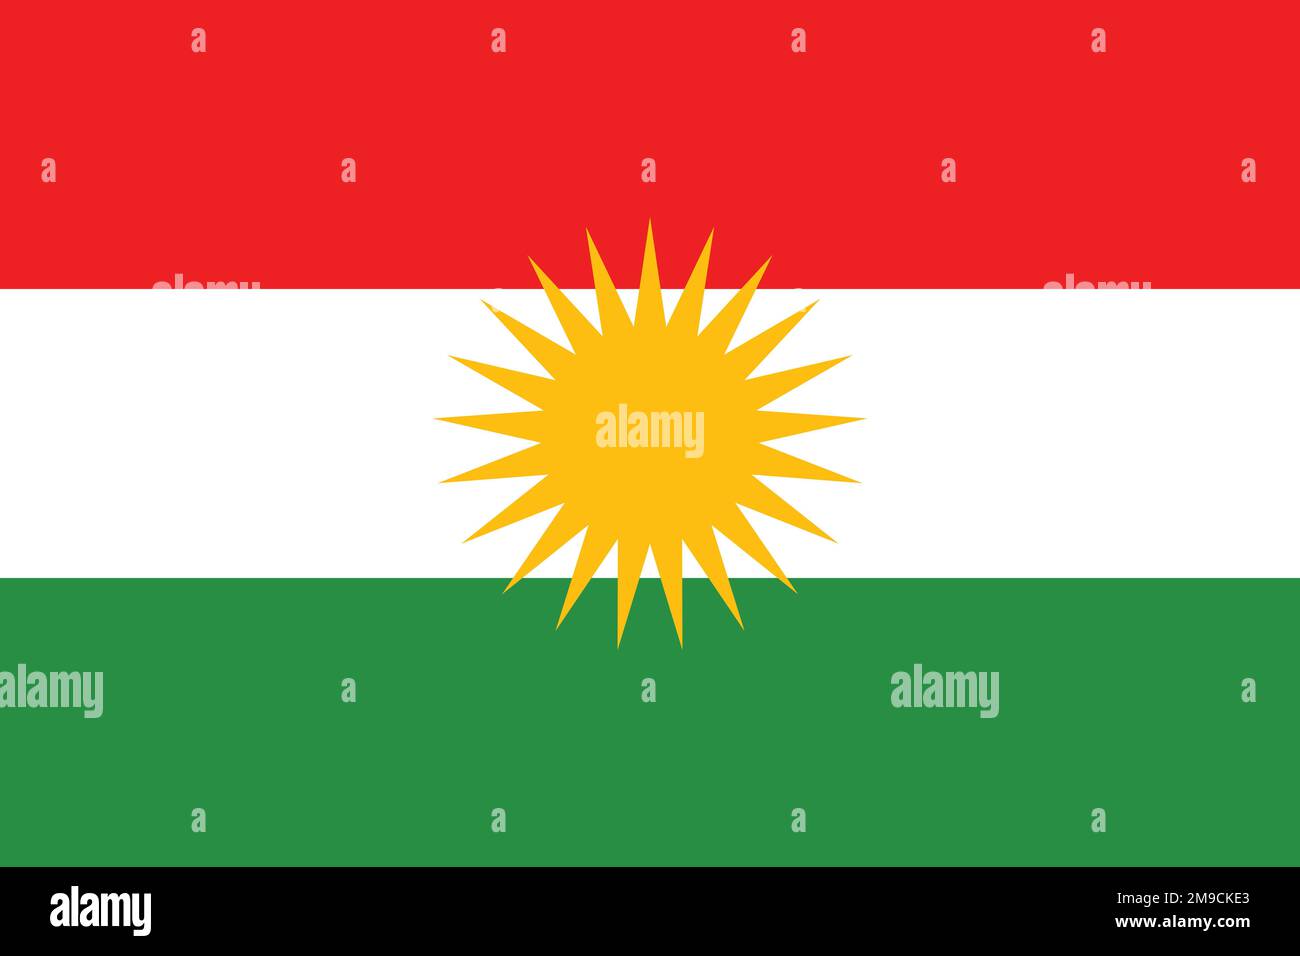 Flagge des iranischen Volkes Kurden. Flagge, die ethnische Gruppe oder Kultur, regionale Behörden repräsentiert. Kein Fahnenmast. Plane-Design, Layout Stockfoto